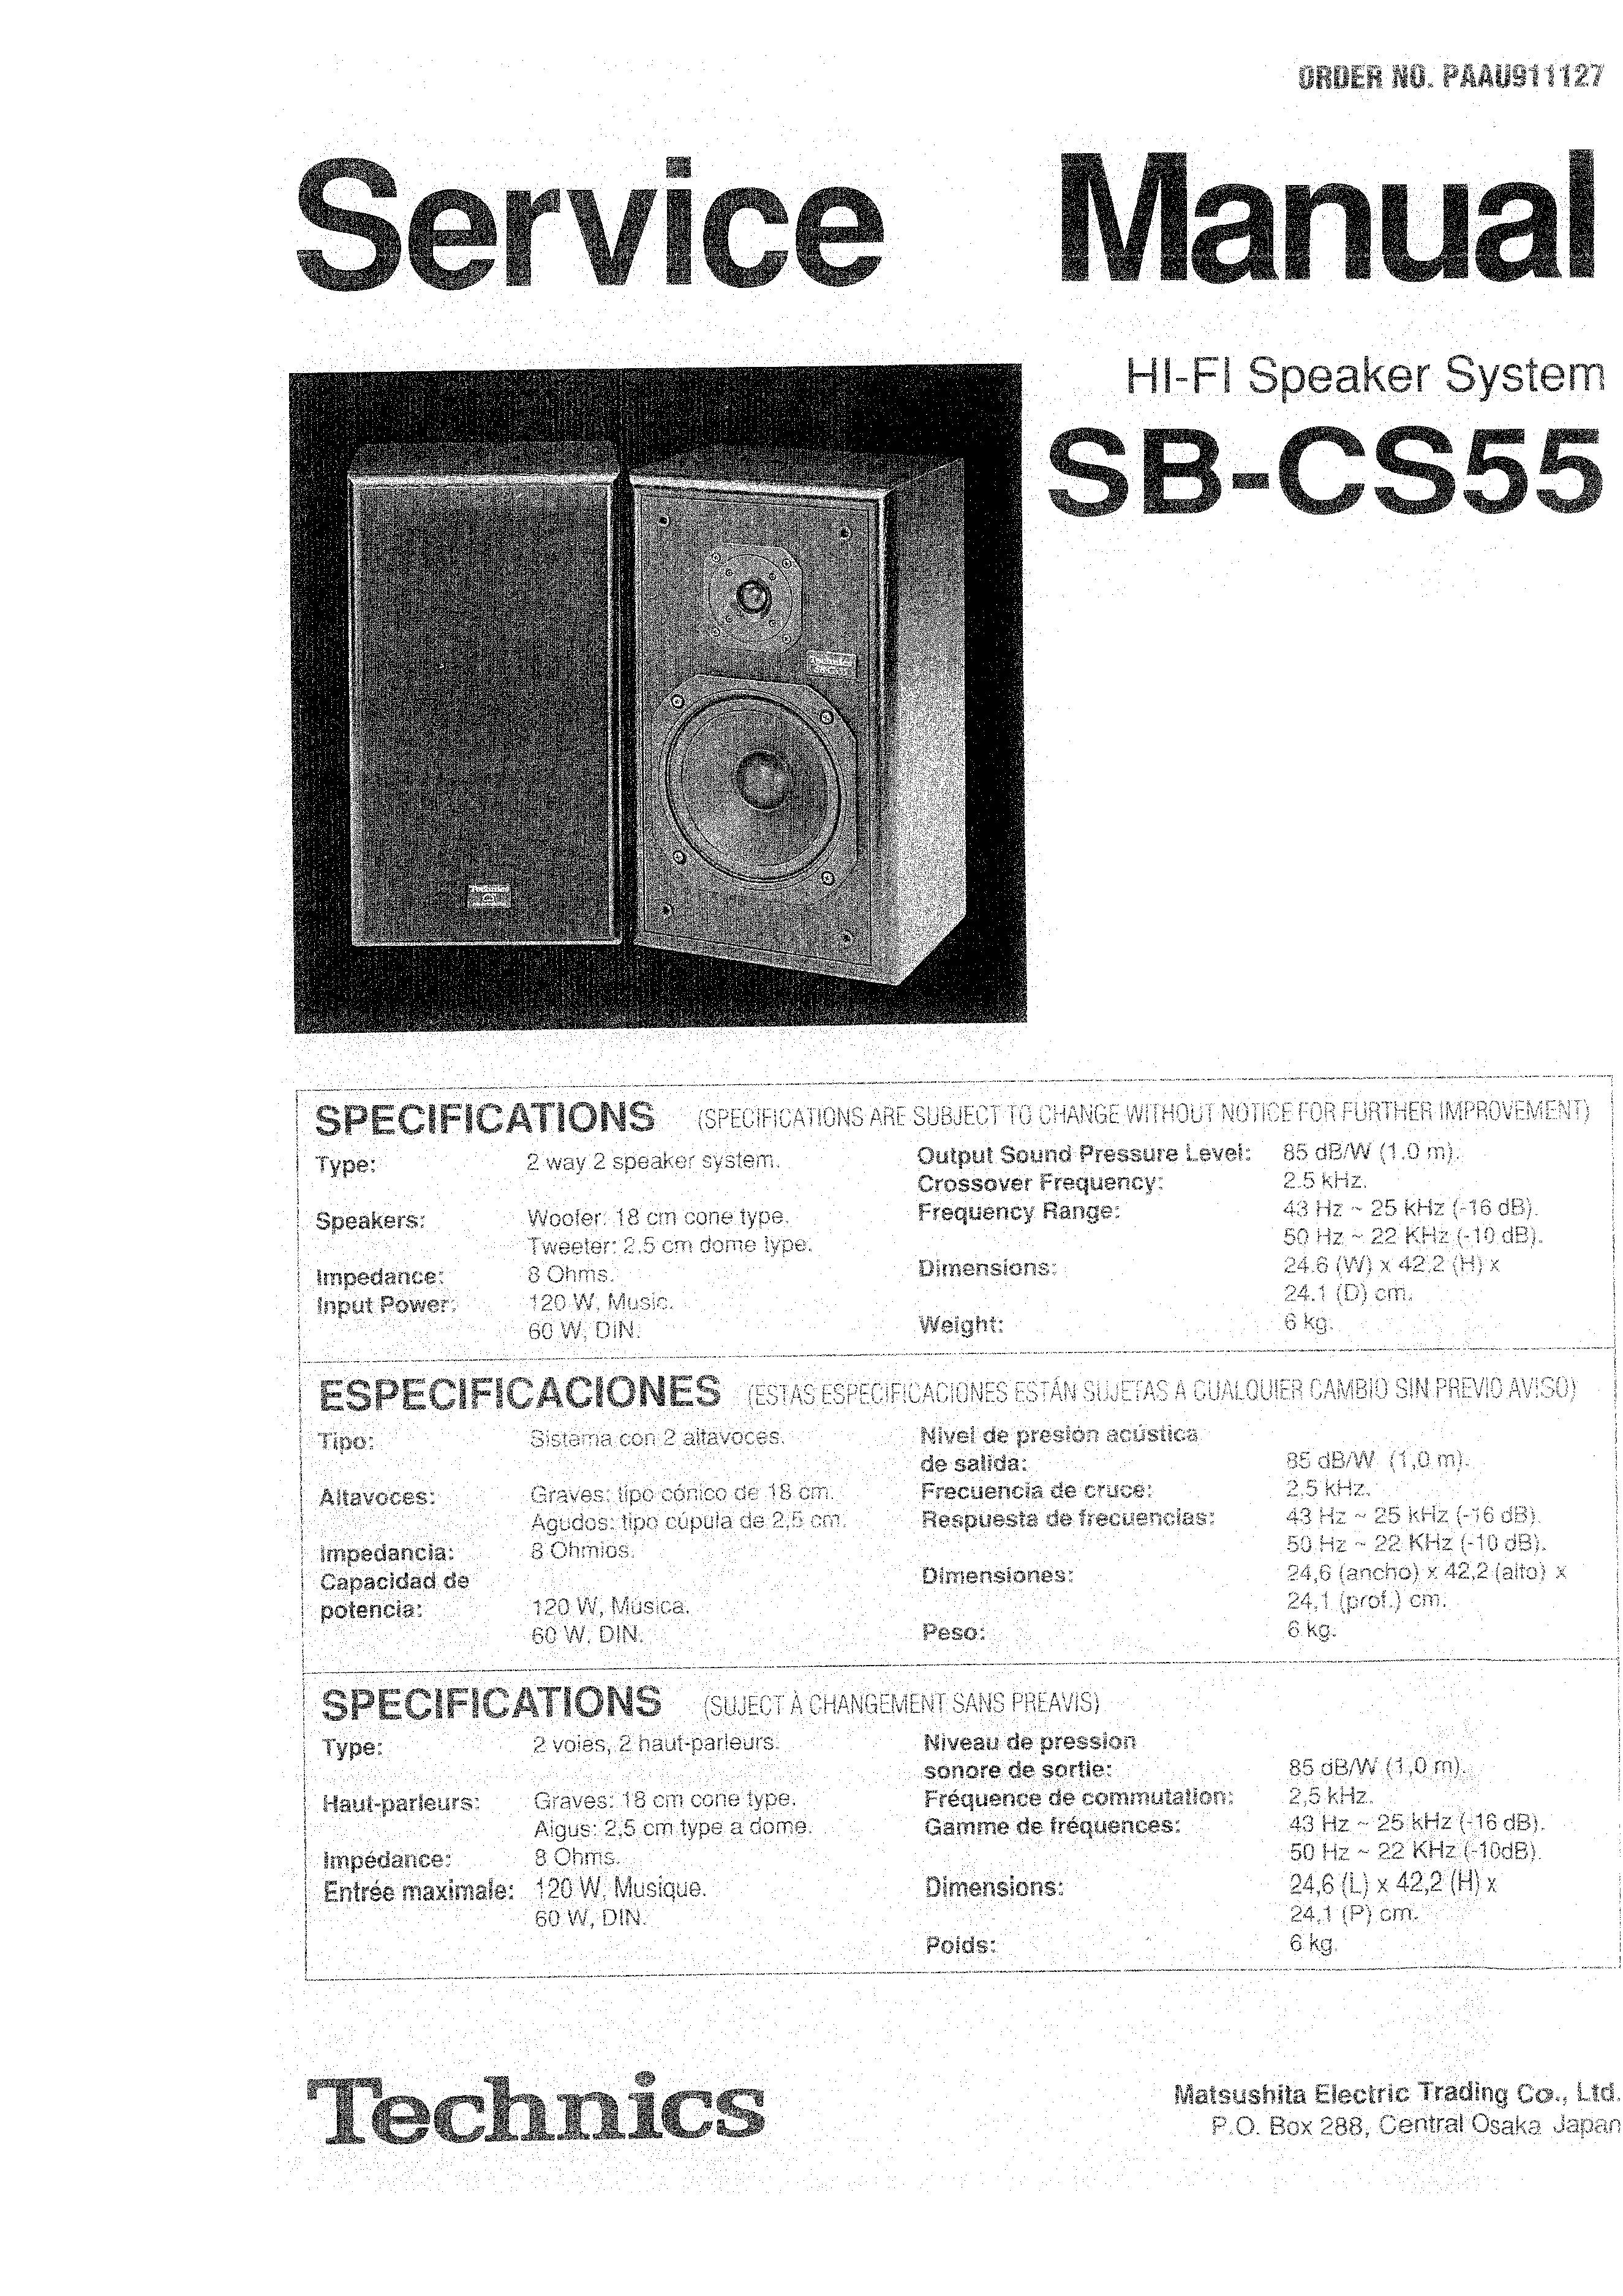 Technics SB-CS55